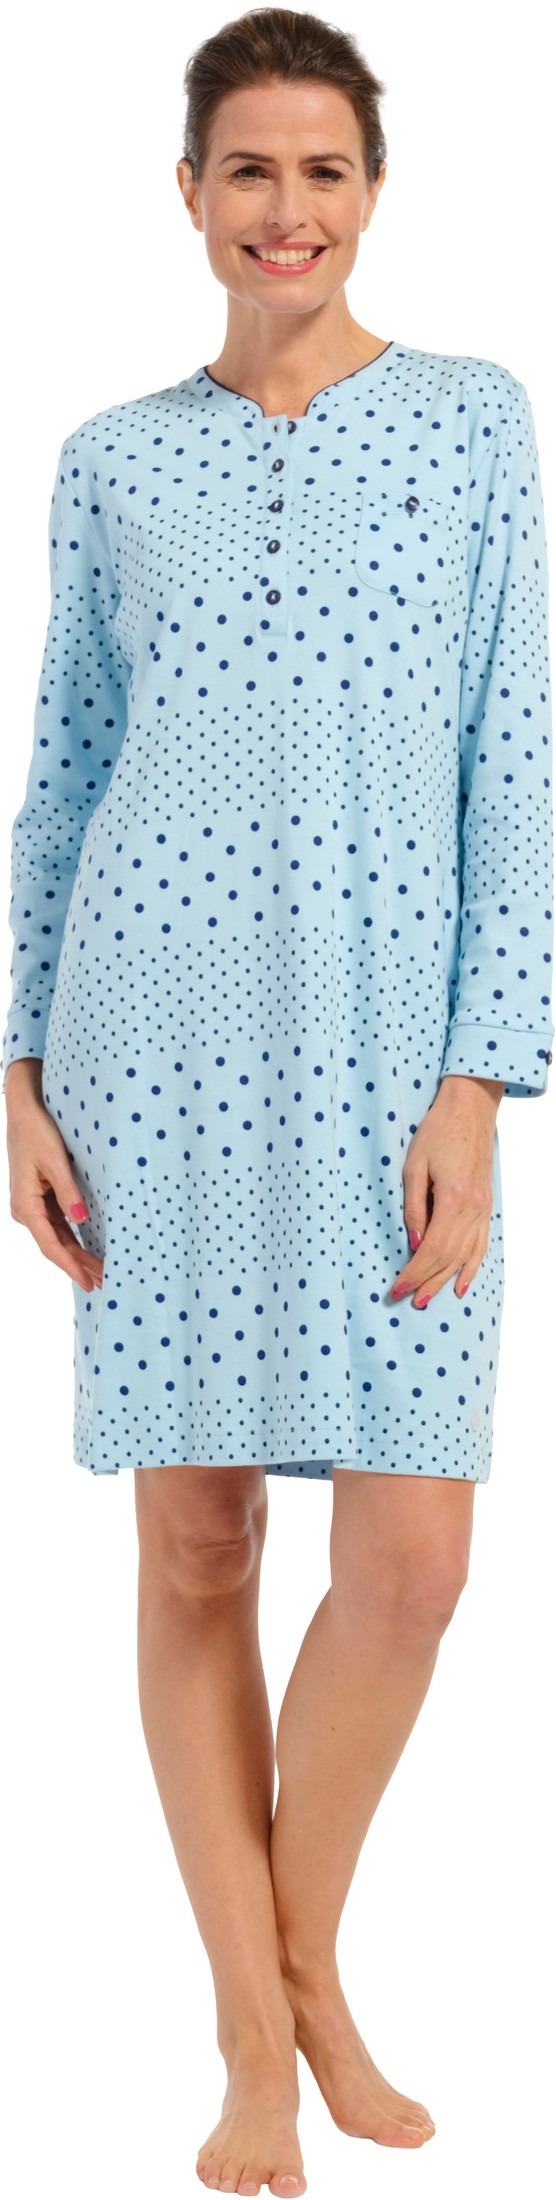 Pastunette dames nachthemd 10232-162-4 - Blauw - 54